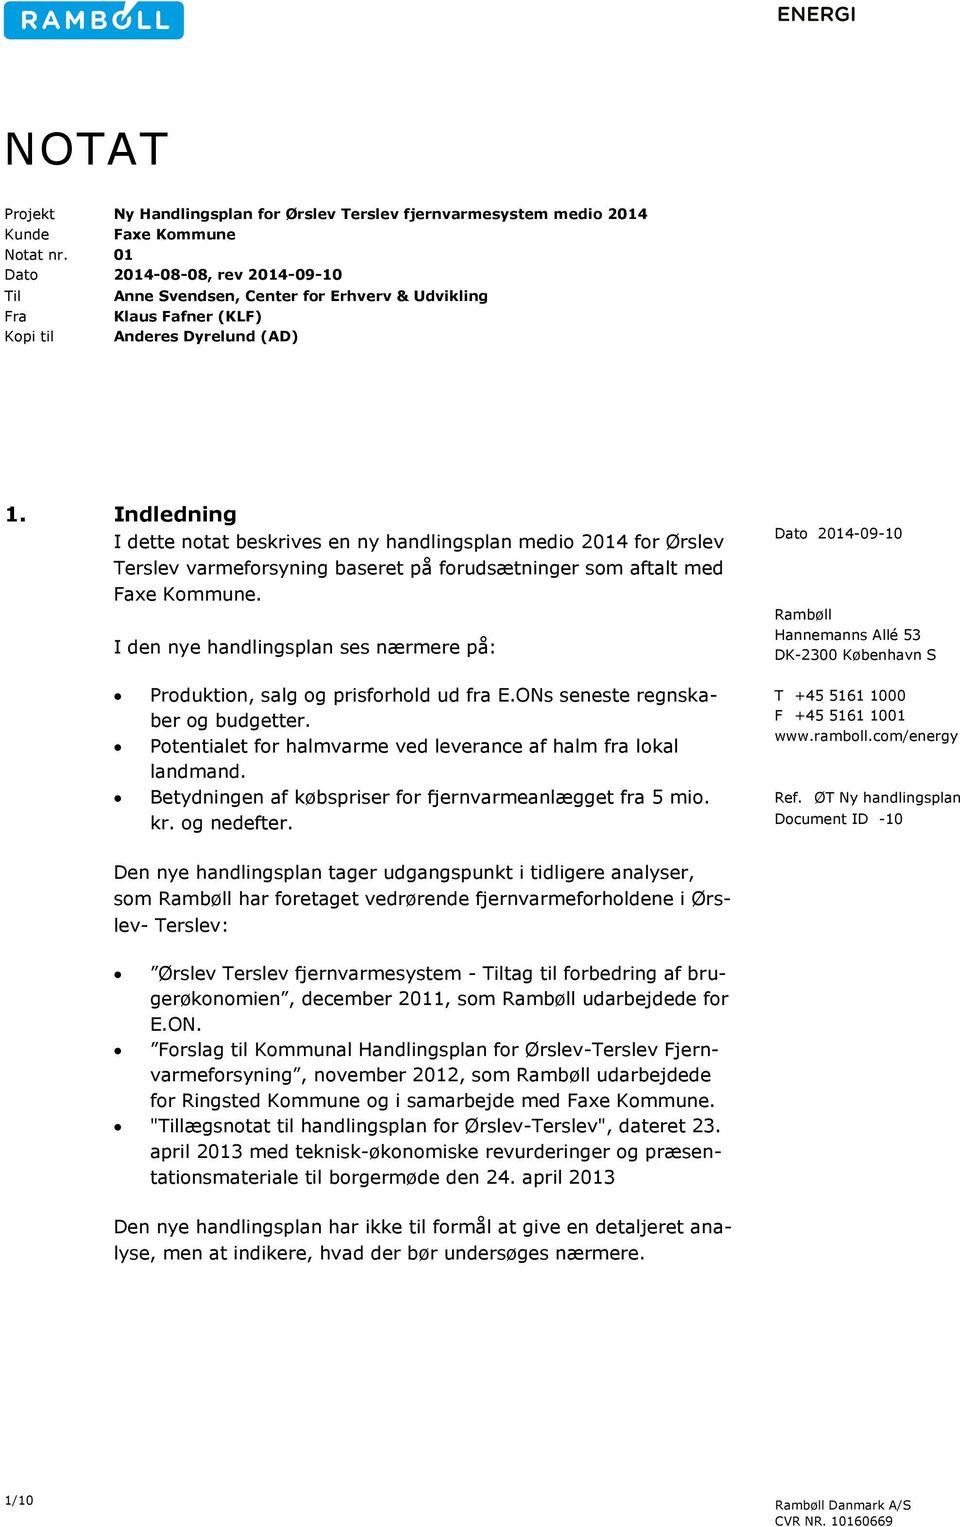 Indledning I dette notat beskrives en ny handlingsplan medio 2014 for Ørslev Terslev varmeforsyning baseret på forudsætninger som aftalt med Faxe Kommune.